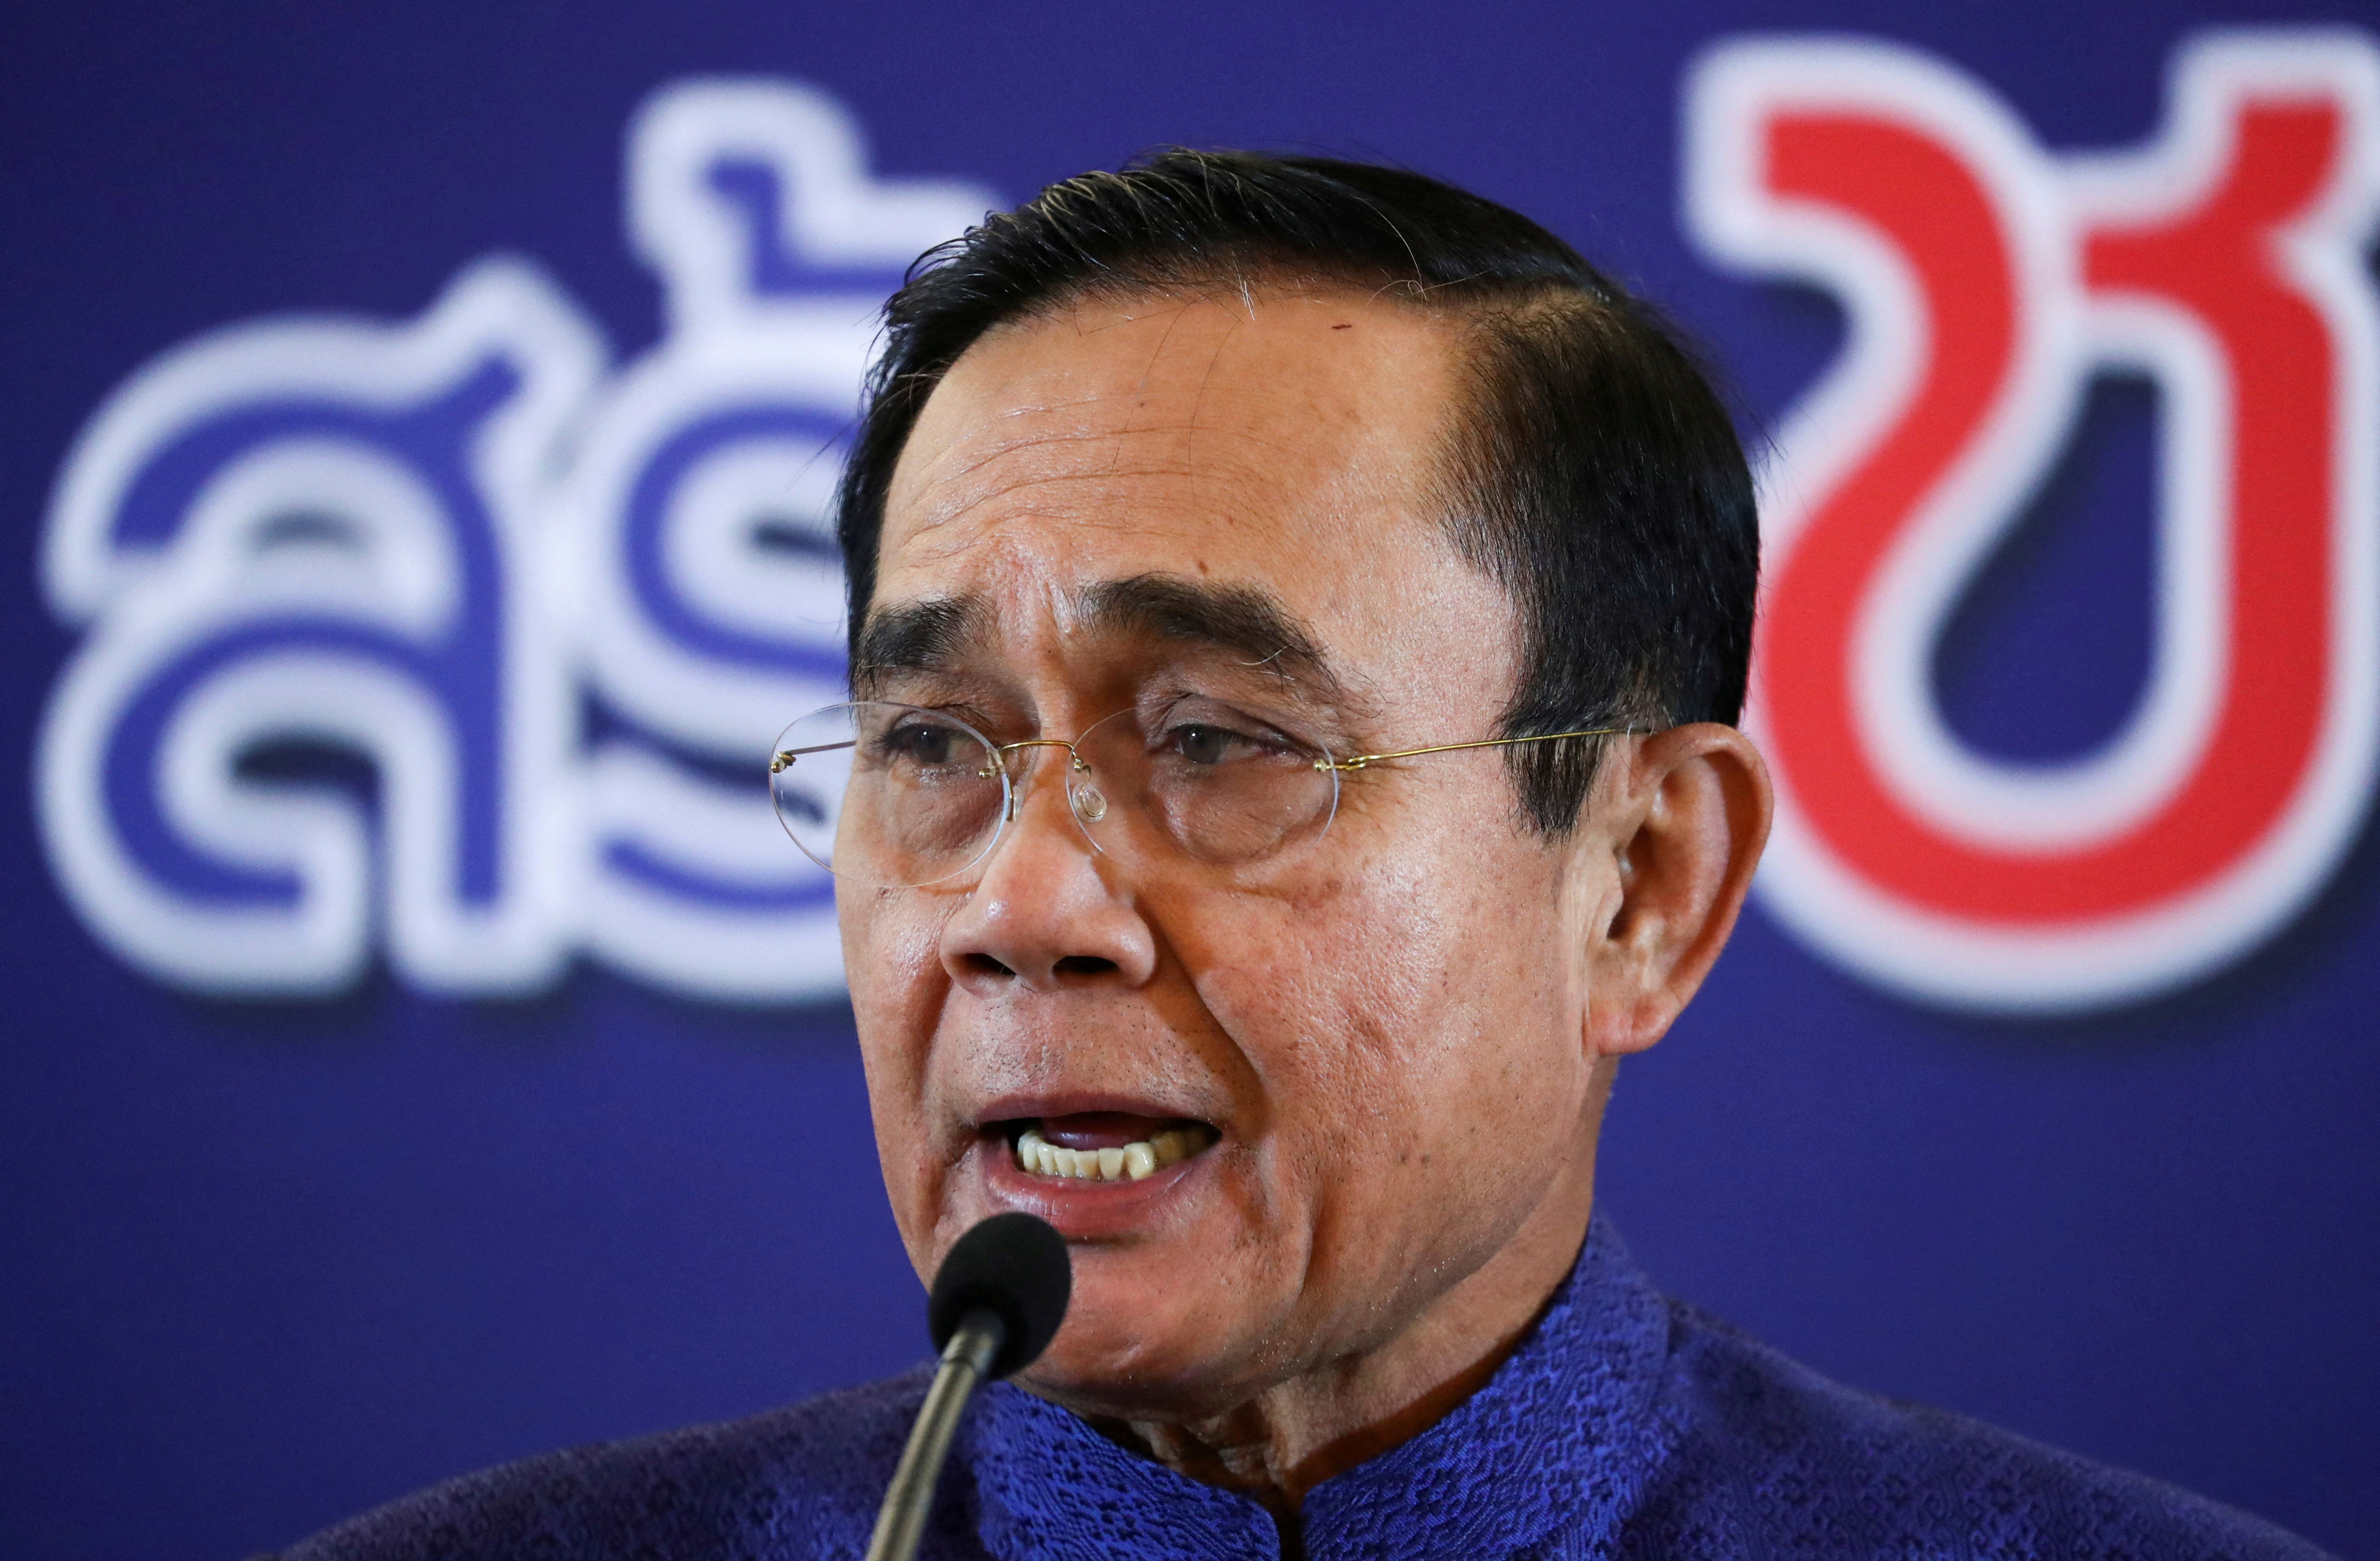 El primer ministro de Tailandia, Prayuth Chan-ocha, habla durante una conferencia de prensa en Bangkok